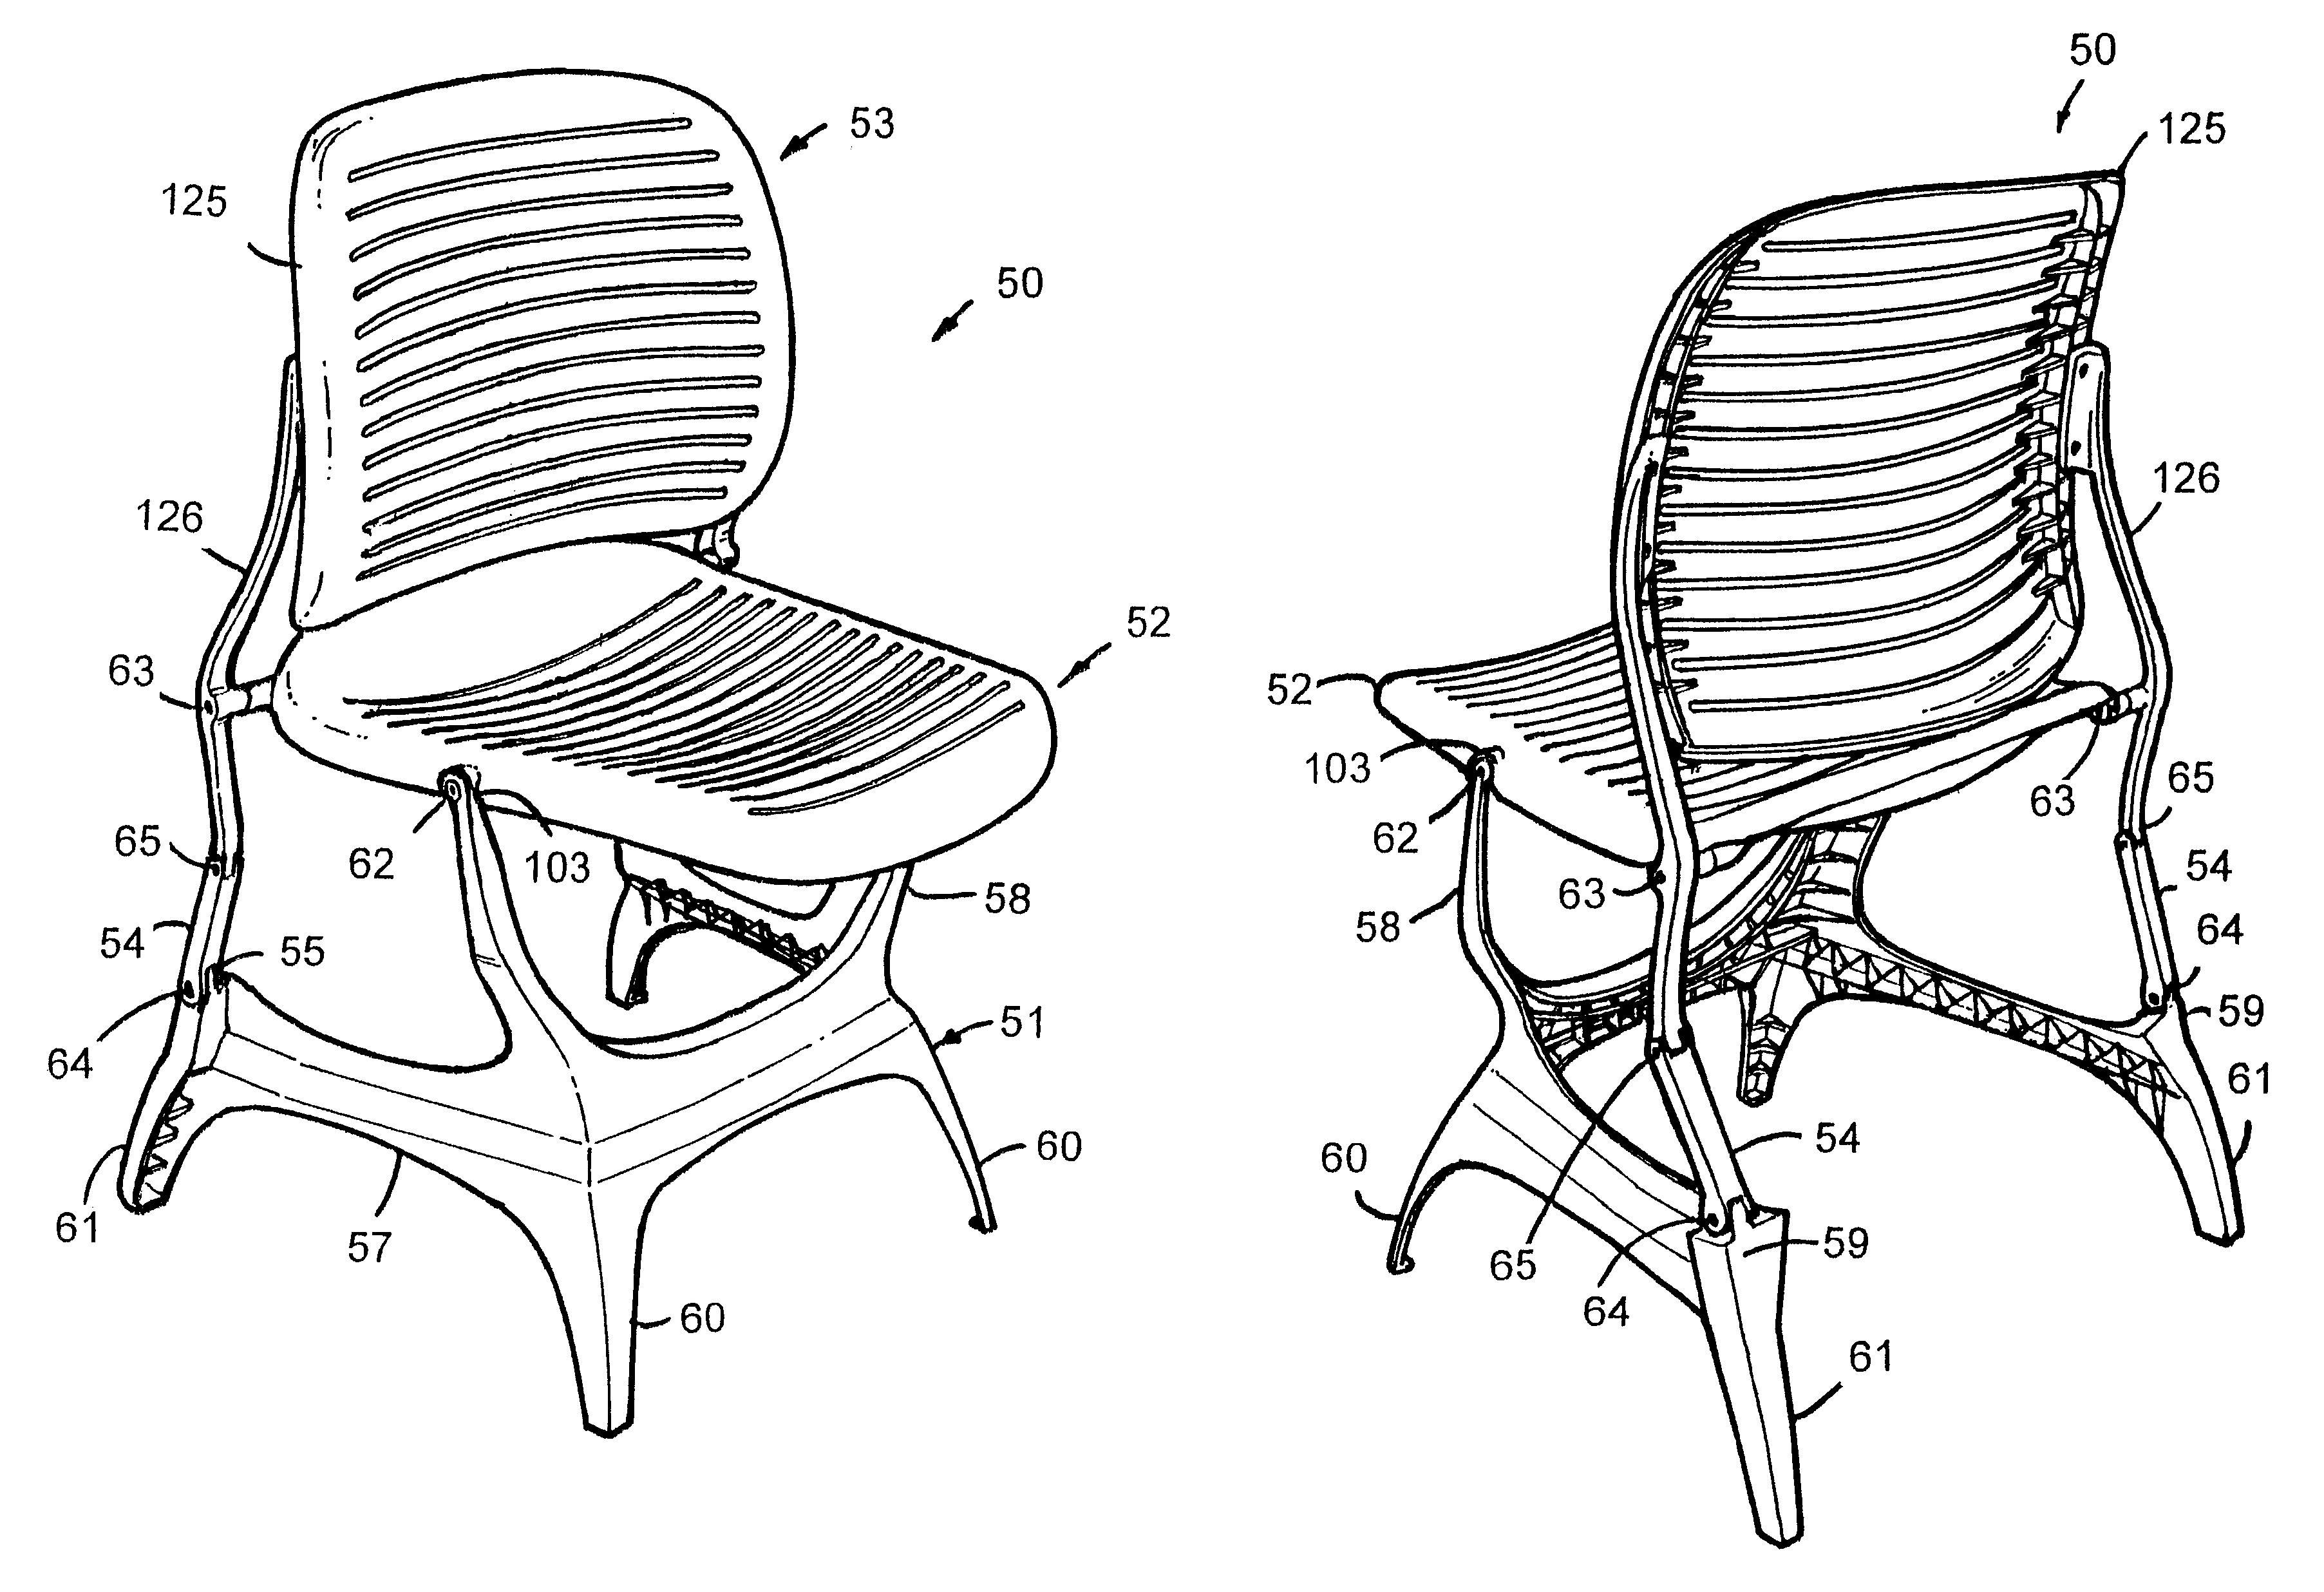 Nestable synchrotilt chair